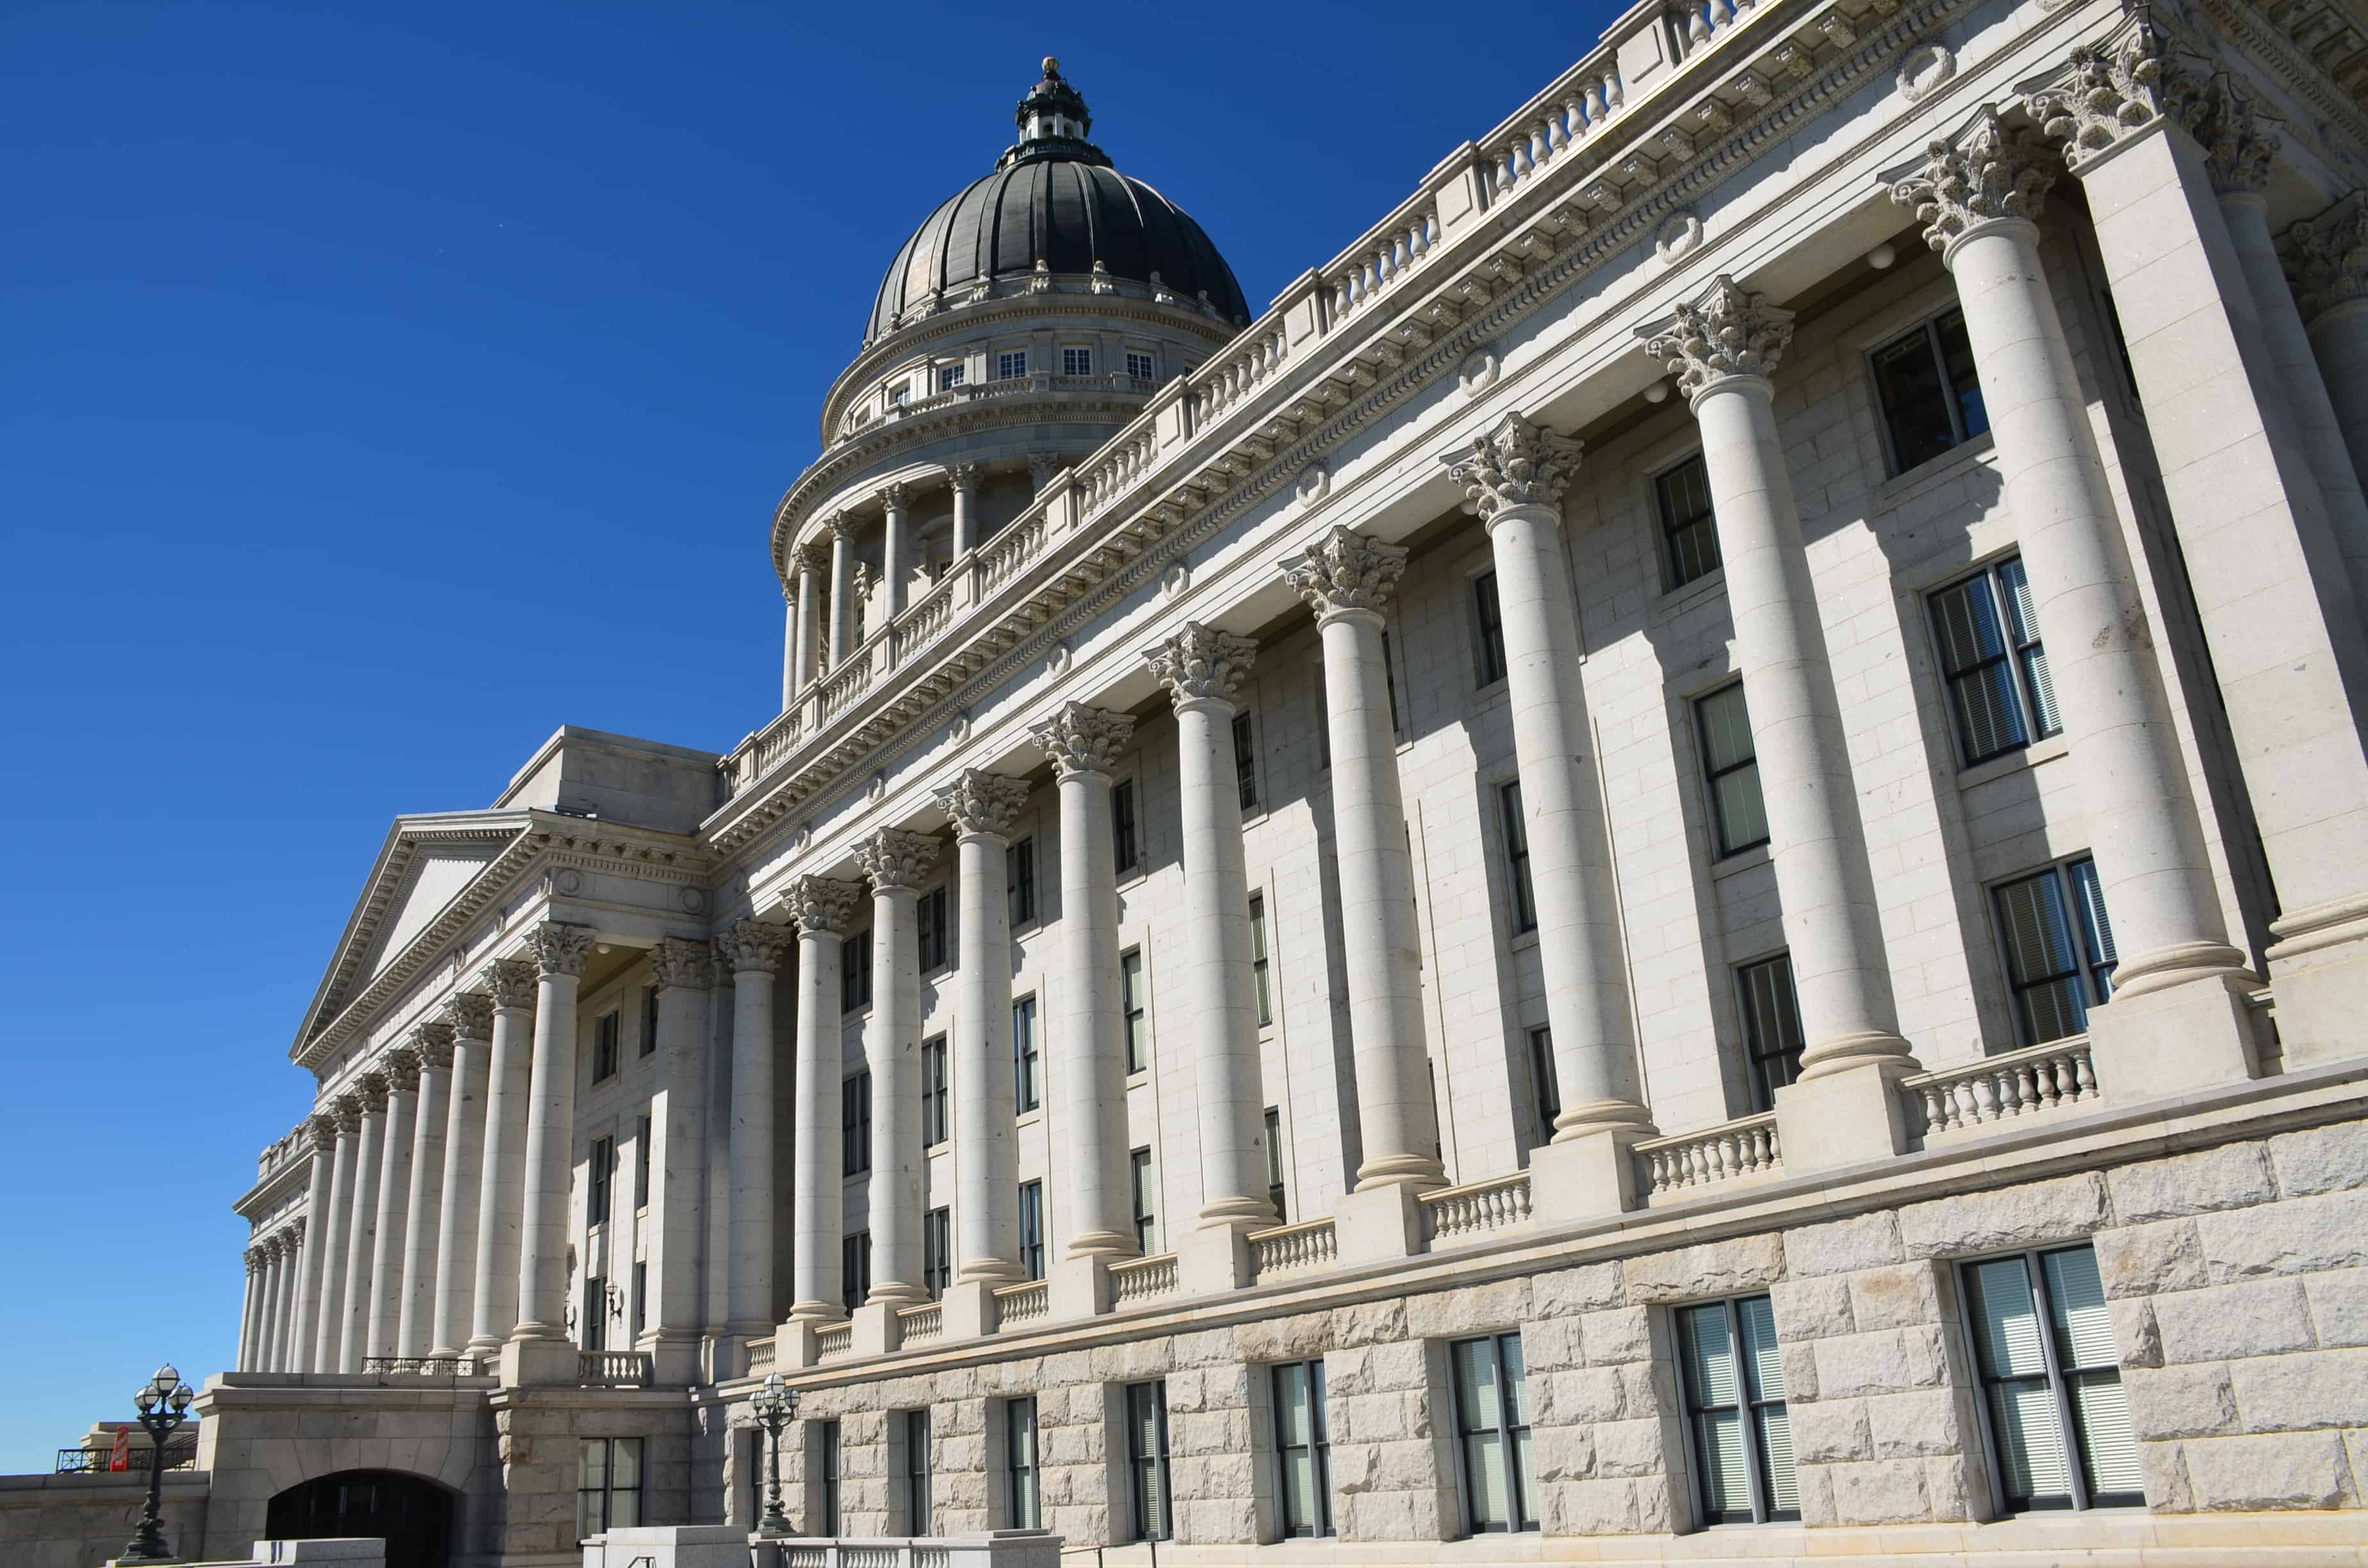 Utah State Capitol in Salt Lake City